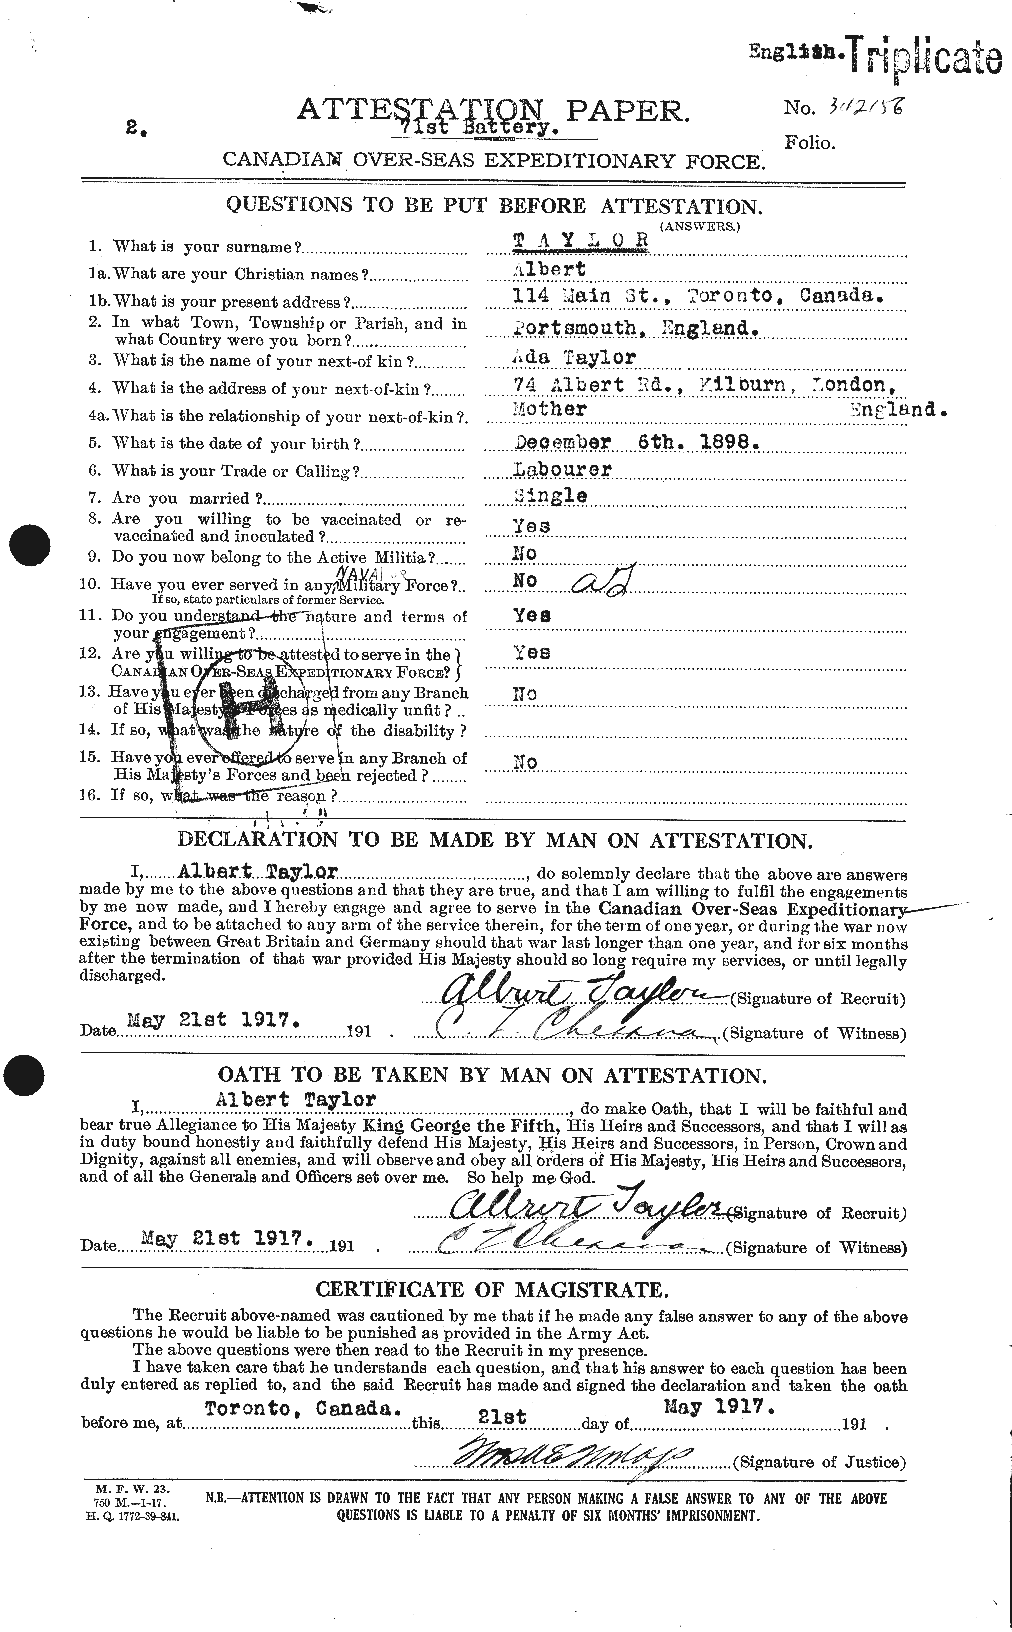 Dossiers du Personnel de la Première Guerre mondiale - CEC 626097a